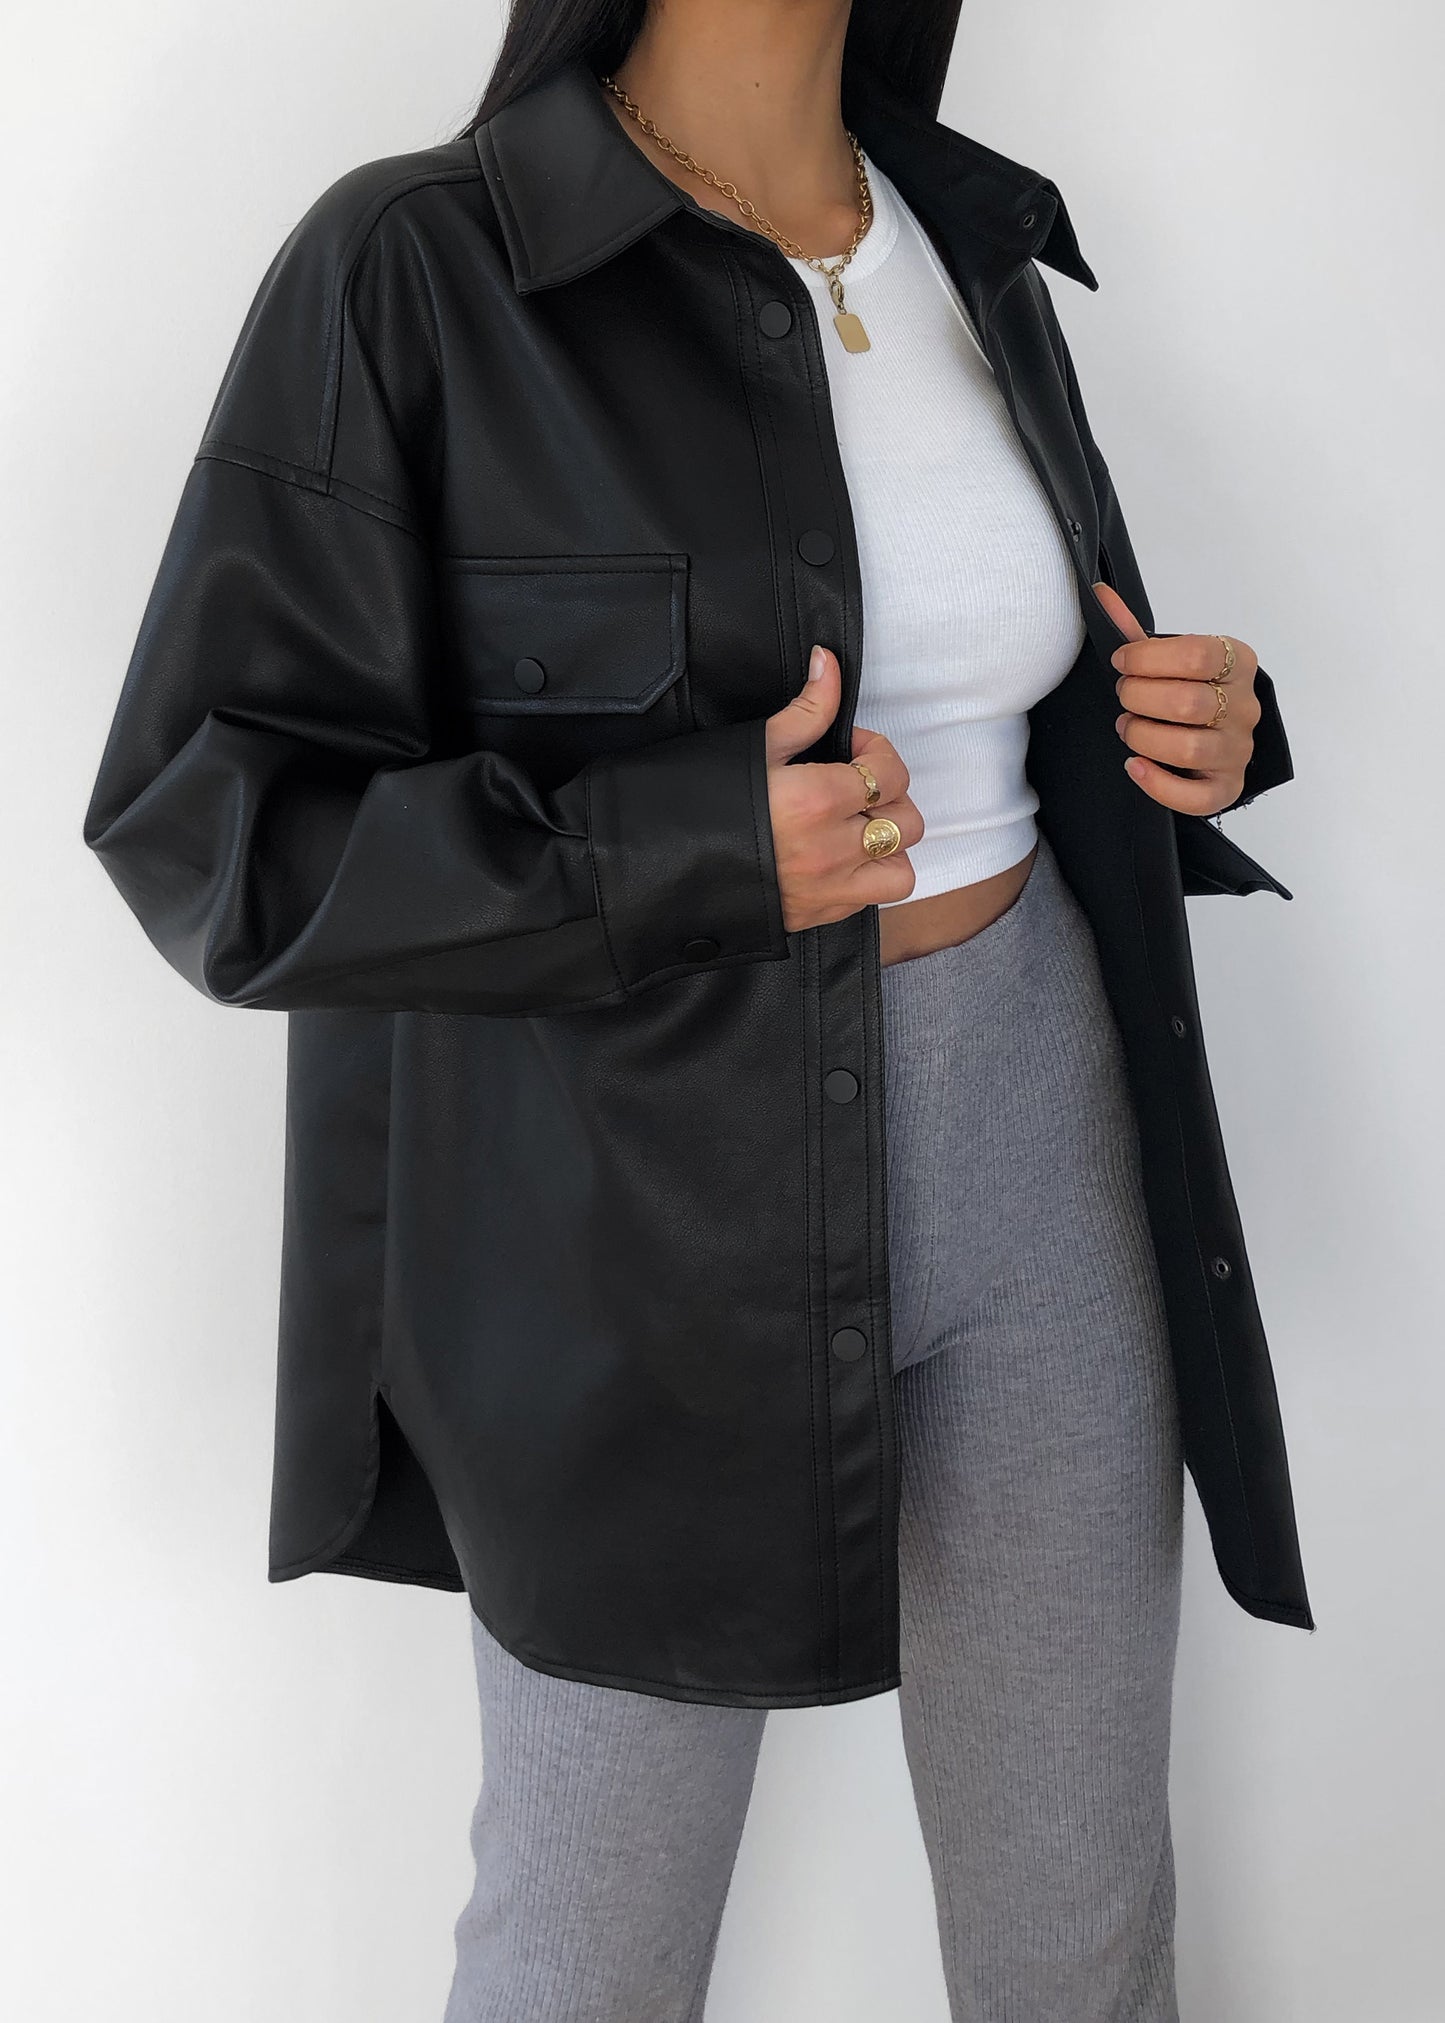 Oversized faux leather jacket